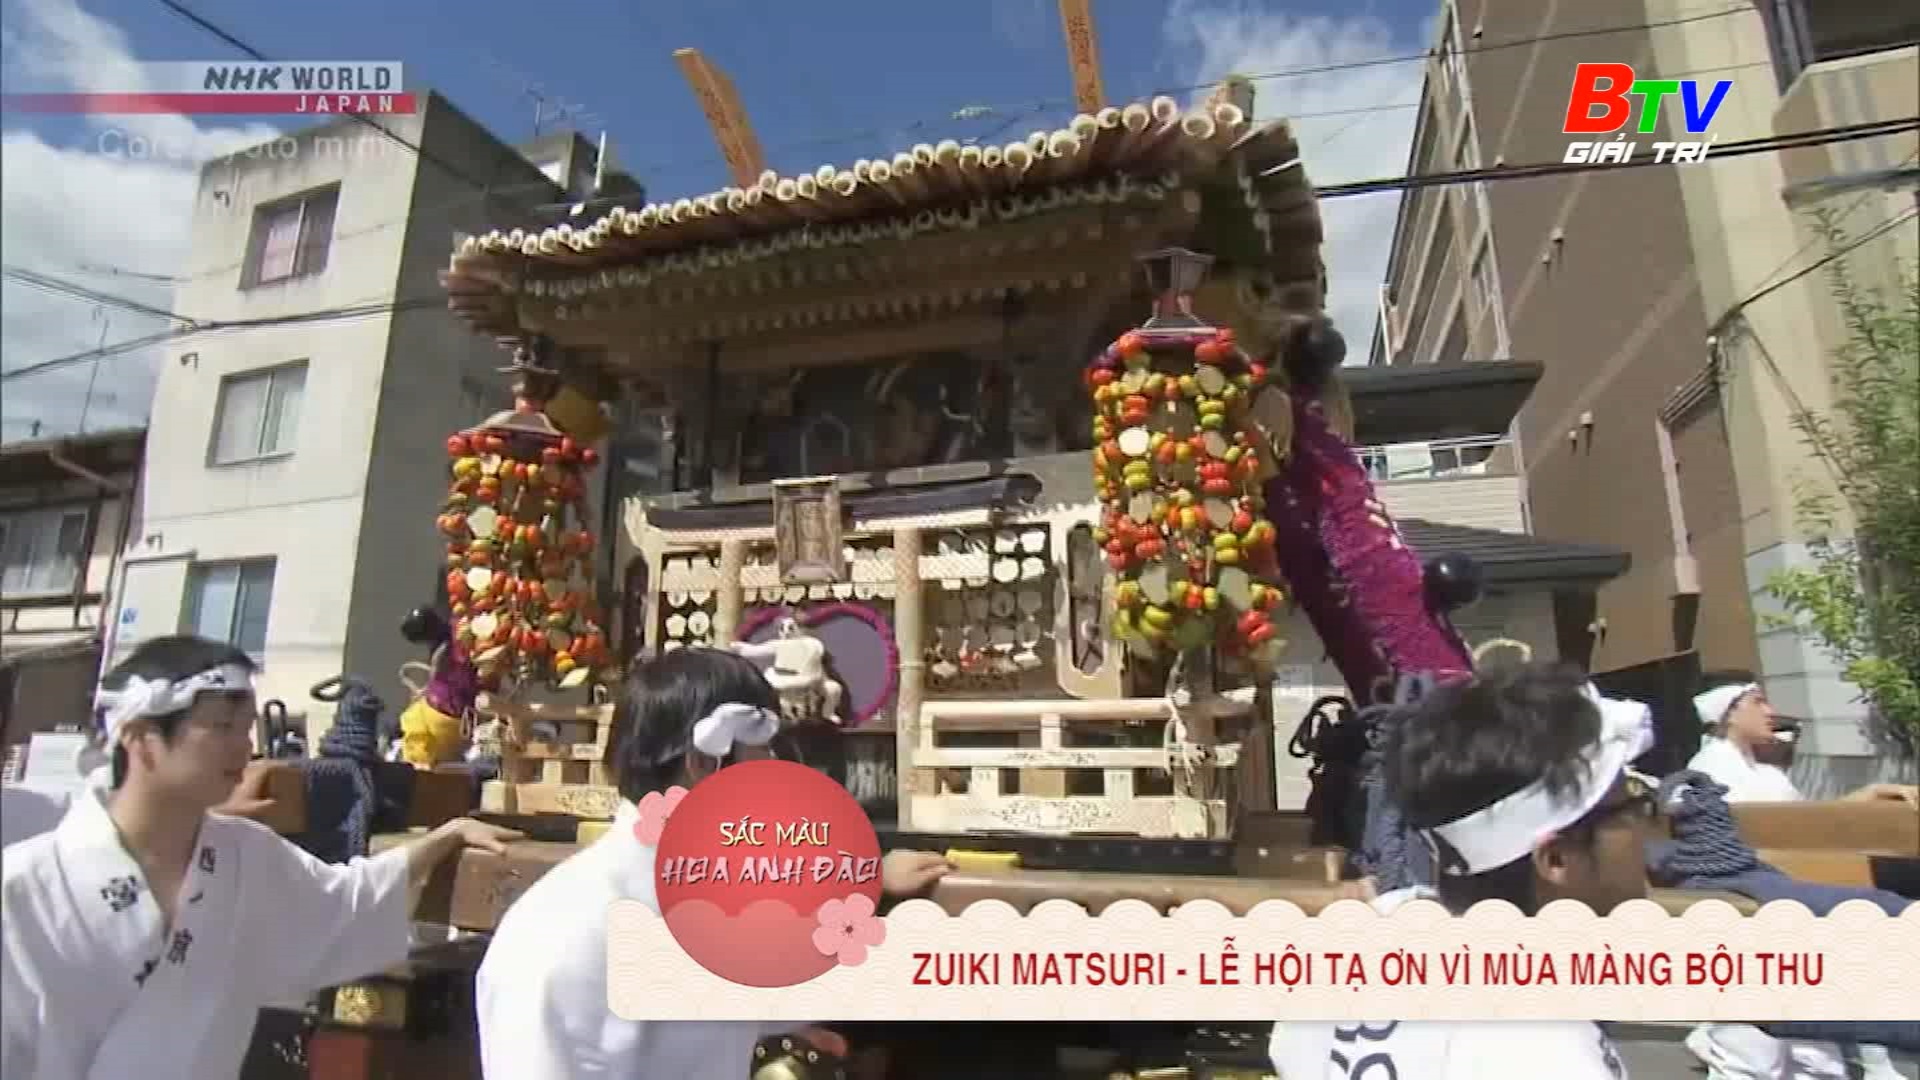 Zuiki Matsuri – Lễ hội tạ ơn vì mùa màng bội thu